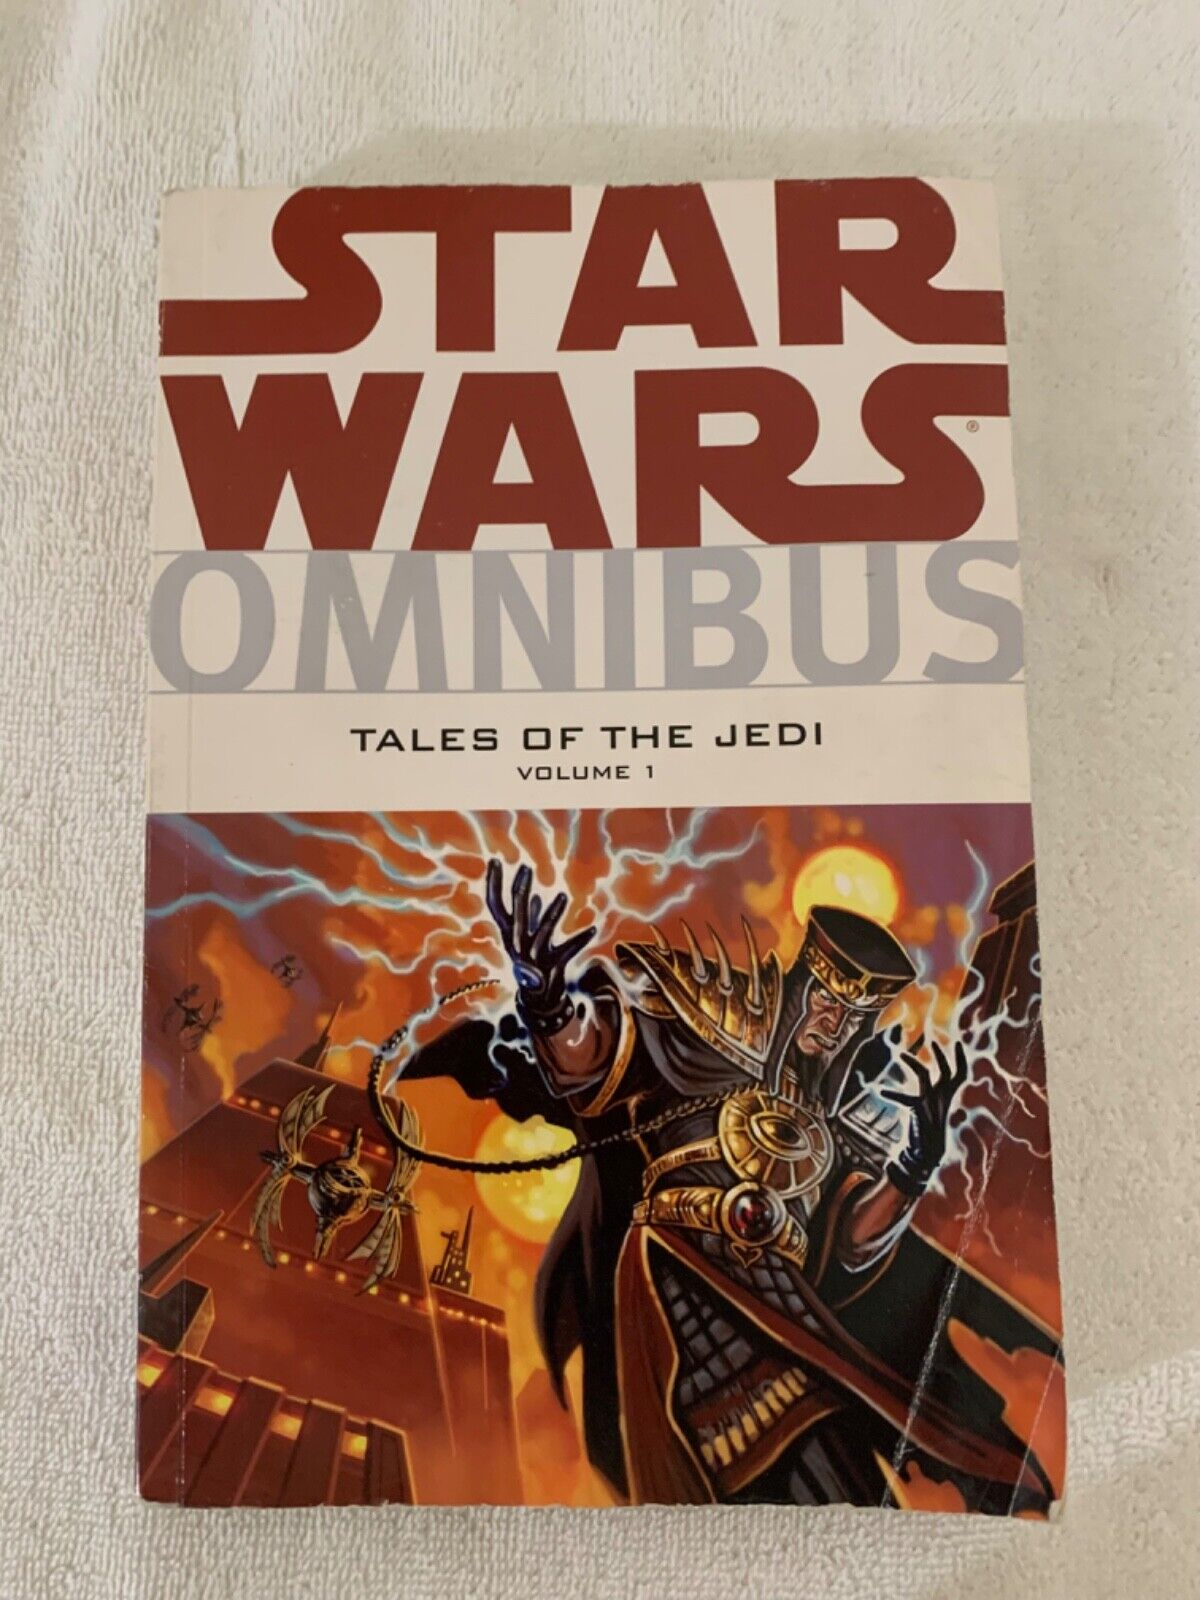 Star Wars Omnibus Tales of the Jedi Volume 1 Dark Horse Comics TPB 1st Print